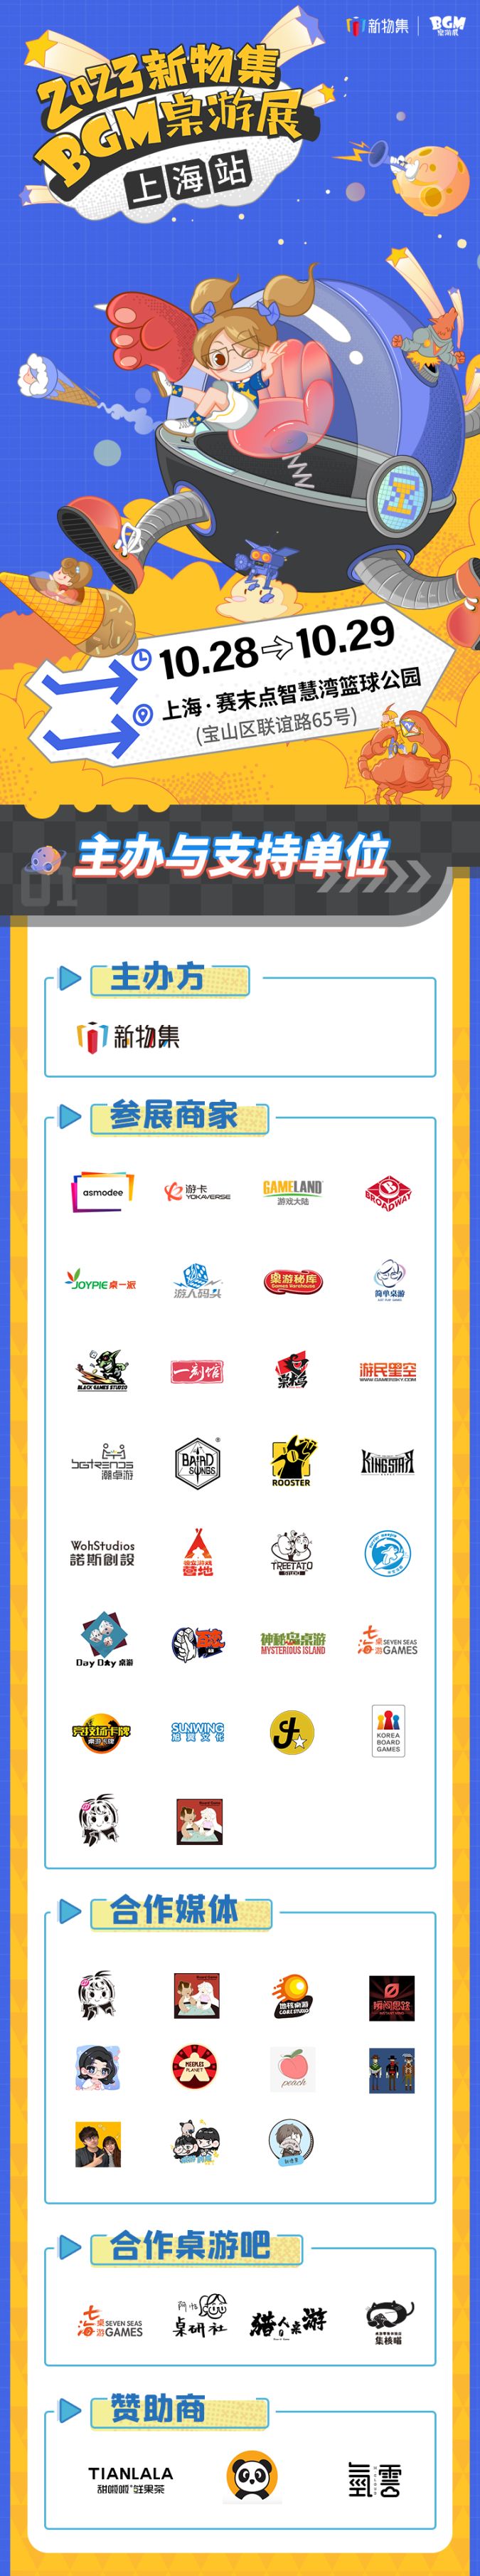 【桌游综合】新物集BGM桌游展-上海站情报全公开！千名玩家共赴盛会！